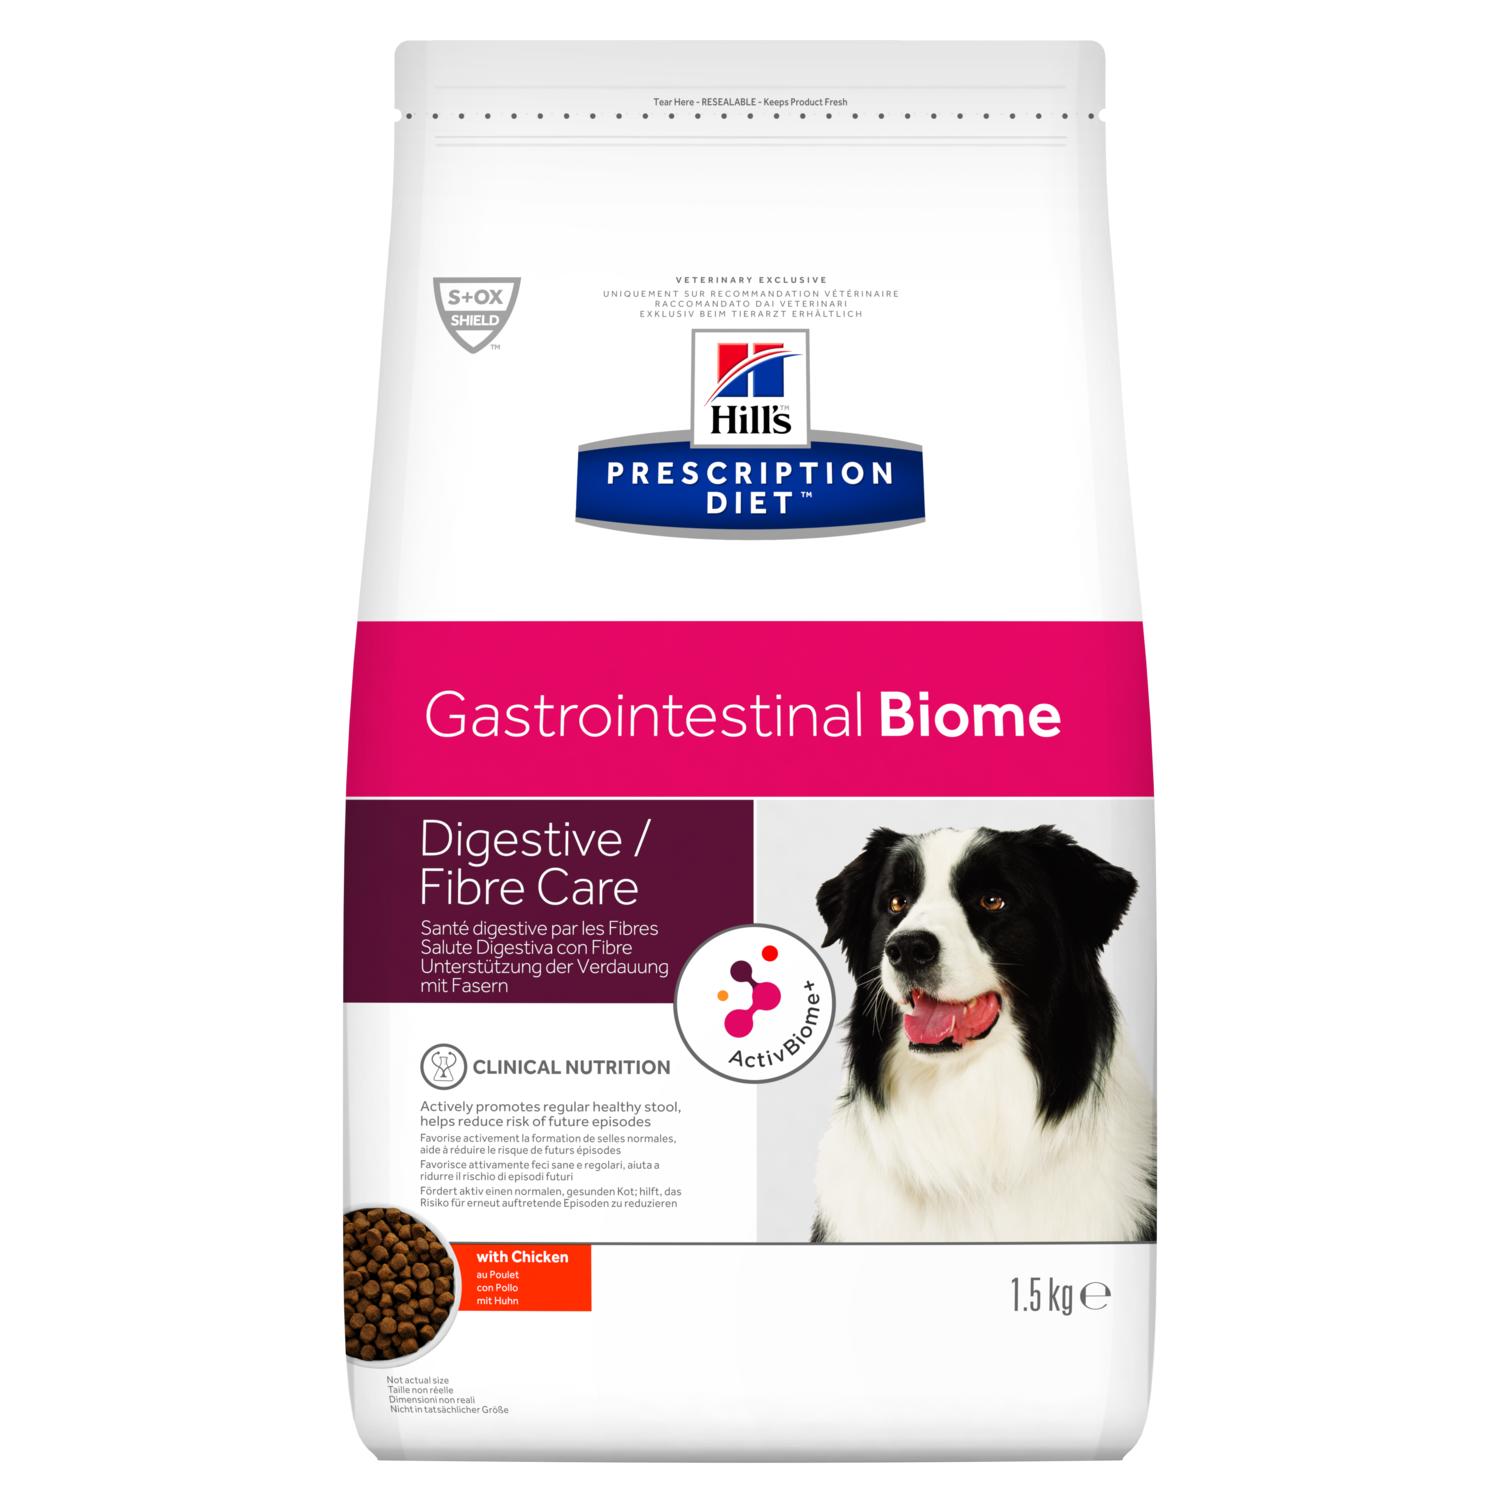 Hill's PRESCRIPTION DIET Gastrointestinal Biome – лечебный сухой корм для собак поддерживает регулярный стул и помогает снизить риск нарушения пищеварения